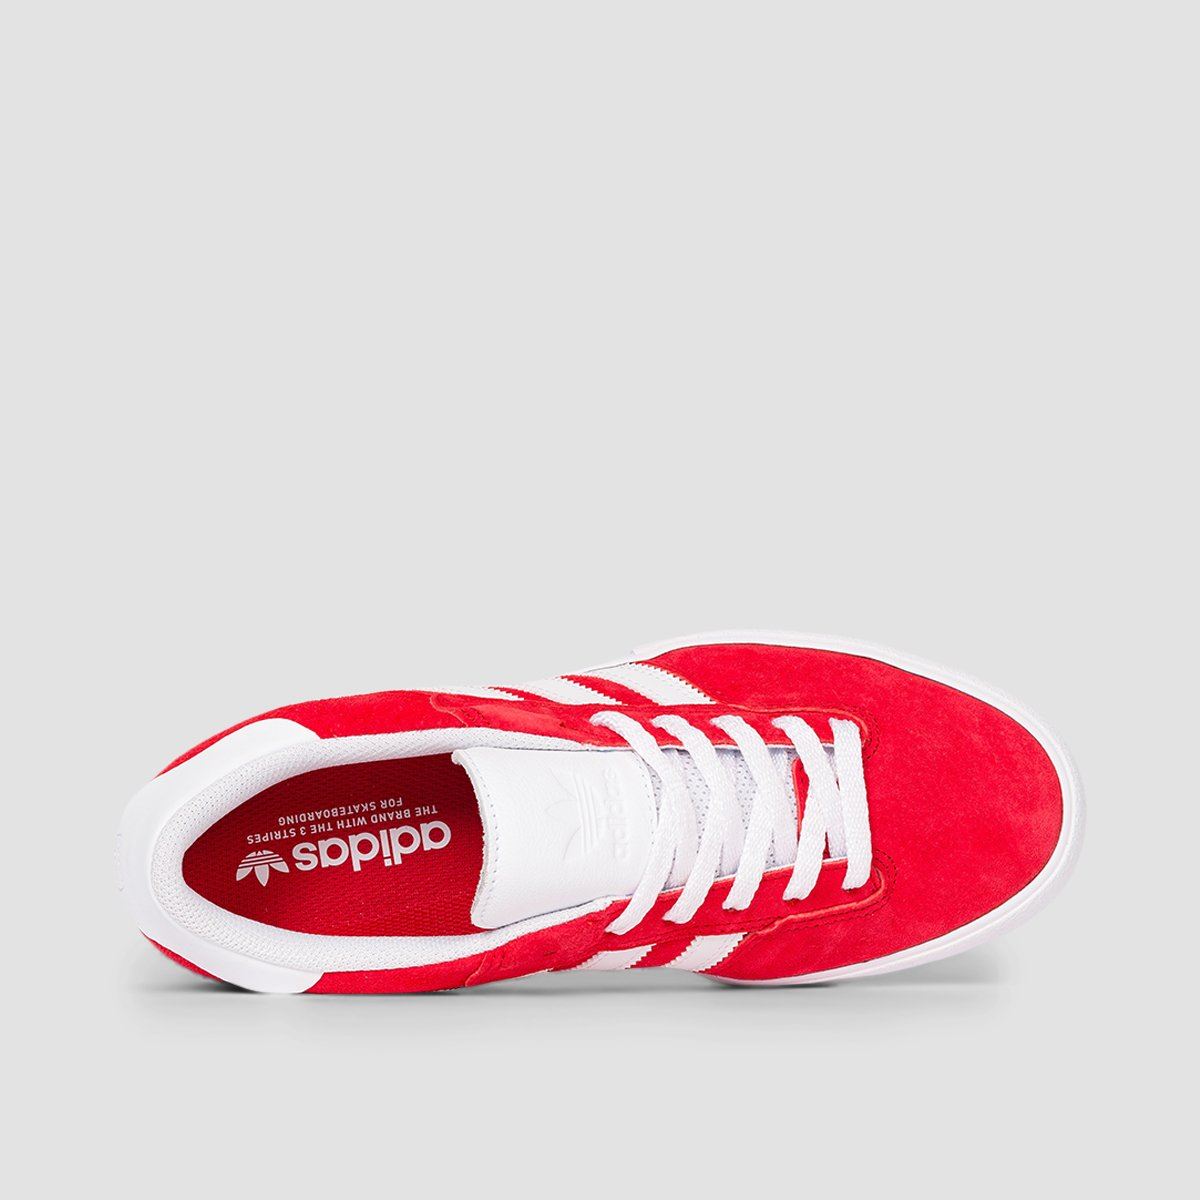 adidas Matchbreak Super Shoes - Scarlet/Footwear White/Gold Metallic